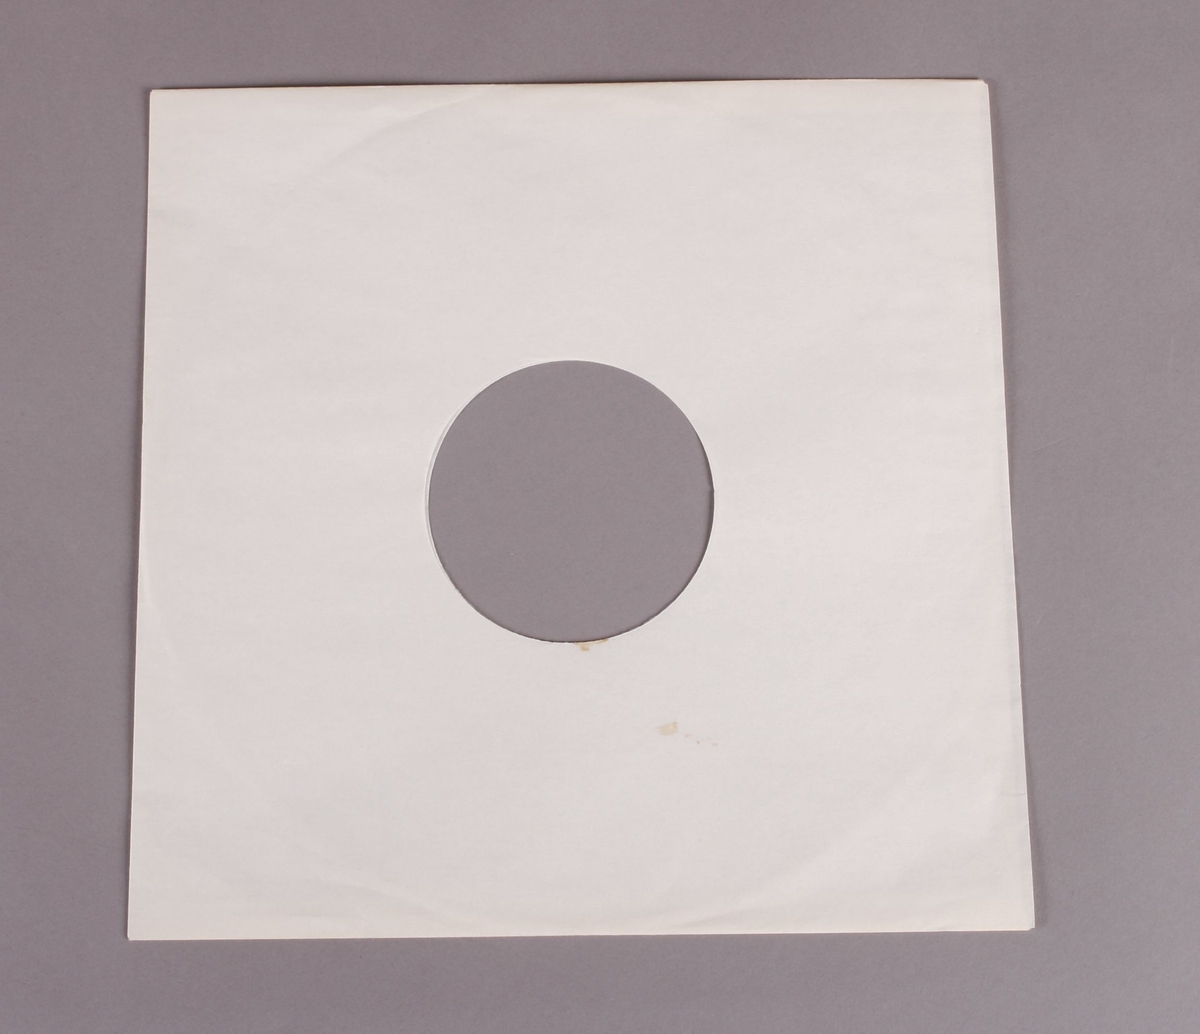 Grammofonplate i svart vinyl med plateomslag av papp. Platen ligger i en papirlomme. Ligger også ved et stiftet hefte (se bilde).